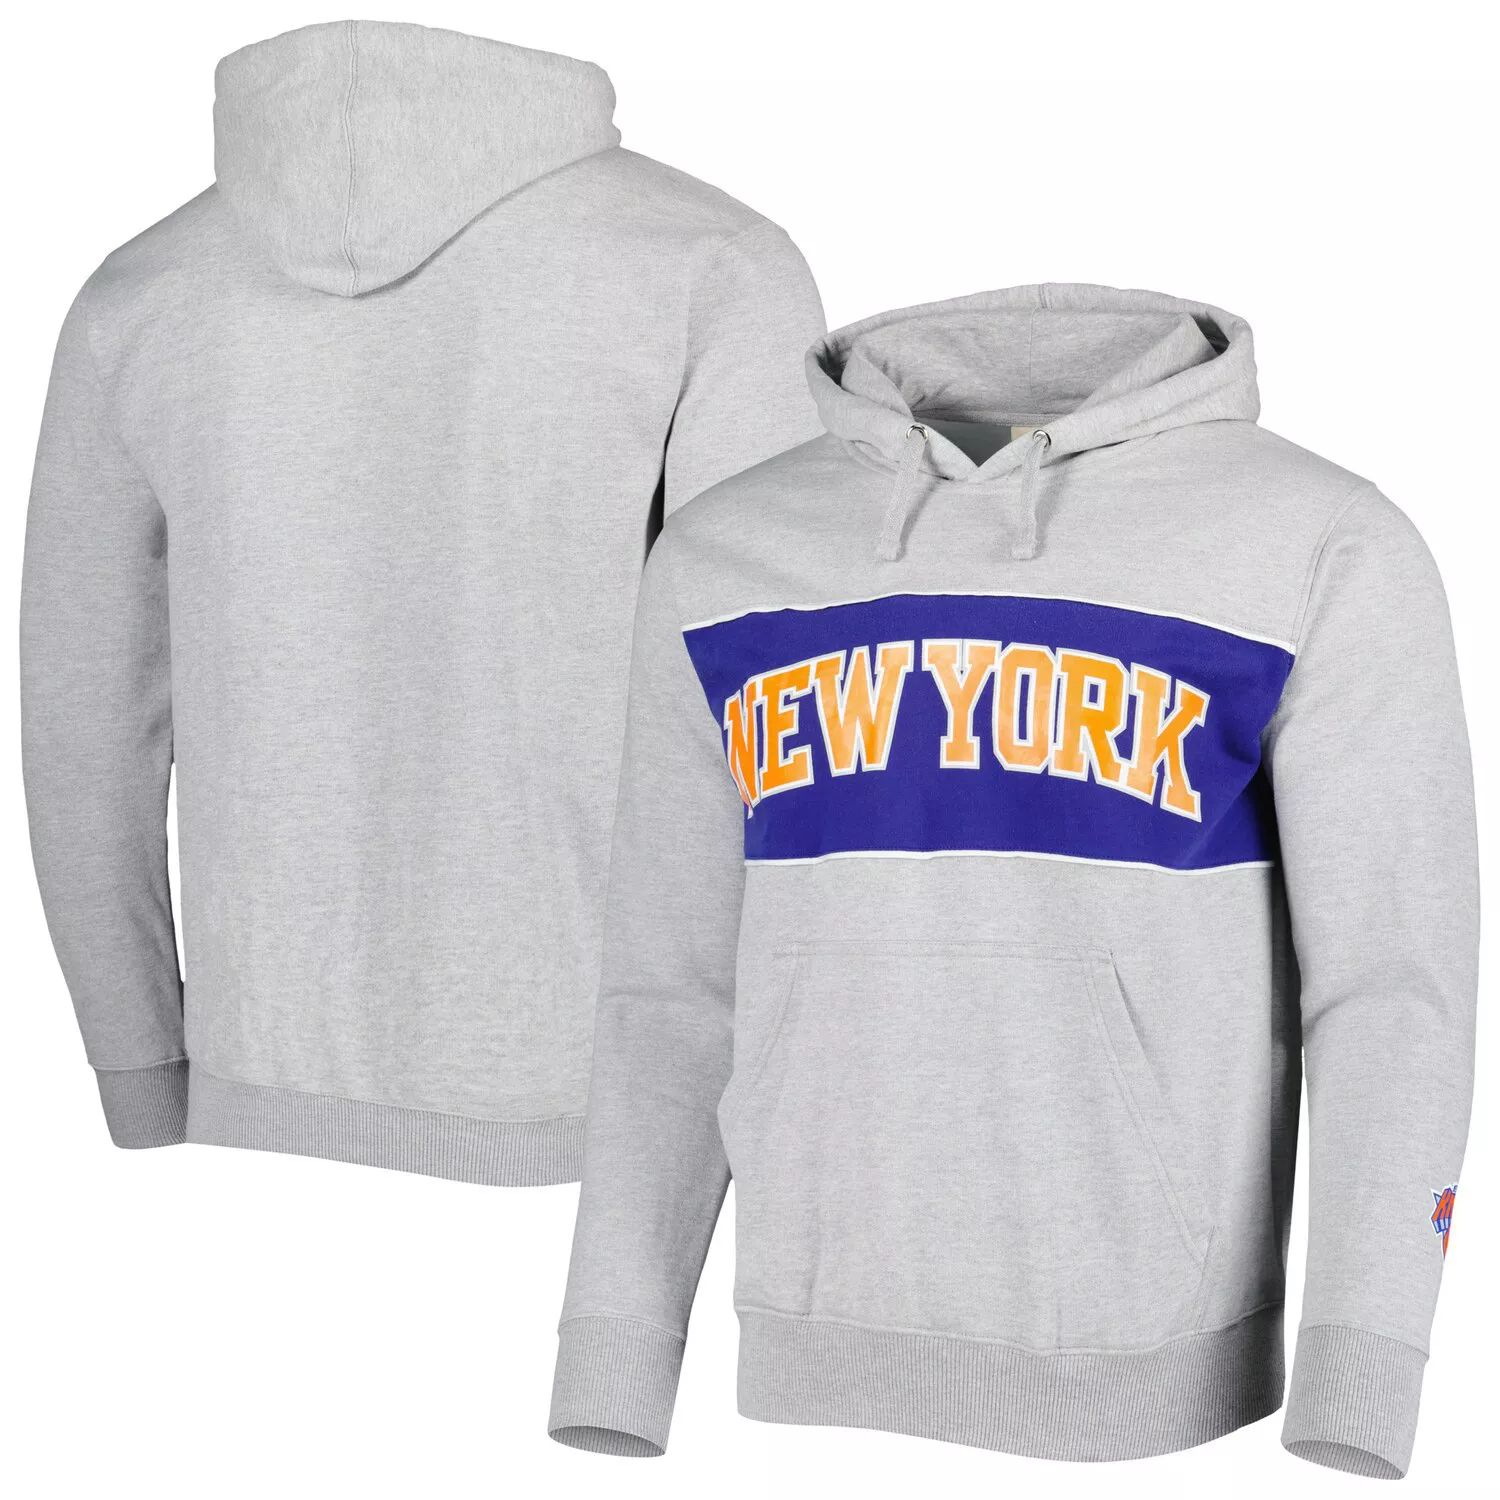 Мужской пуловер с капюшоном серого цвета Хизер Нью-Йорк Никс с надписью French Terry Fanatics